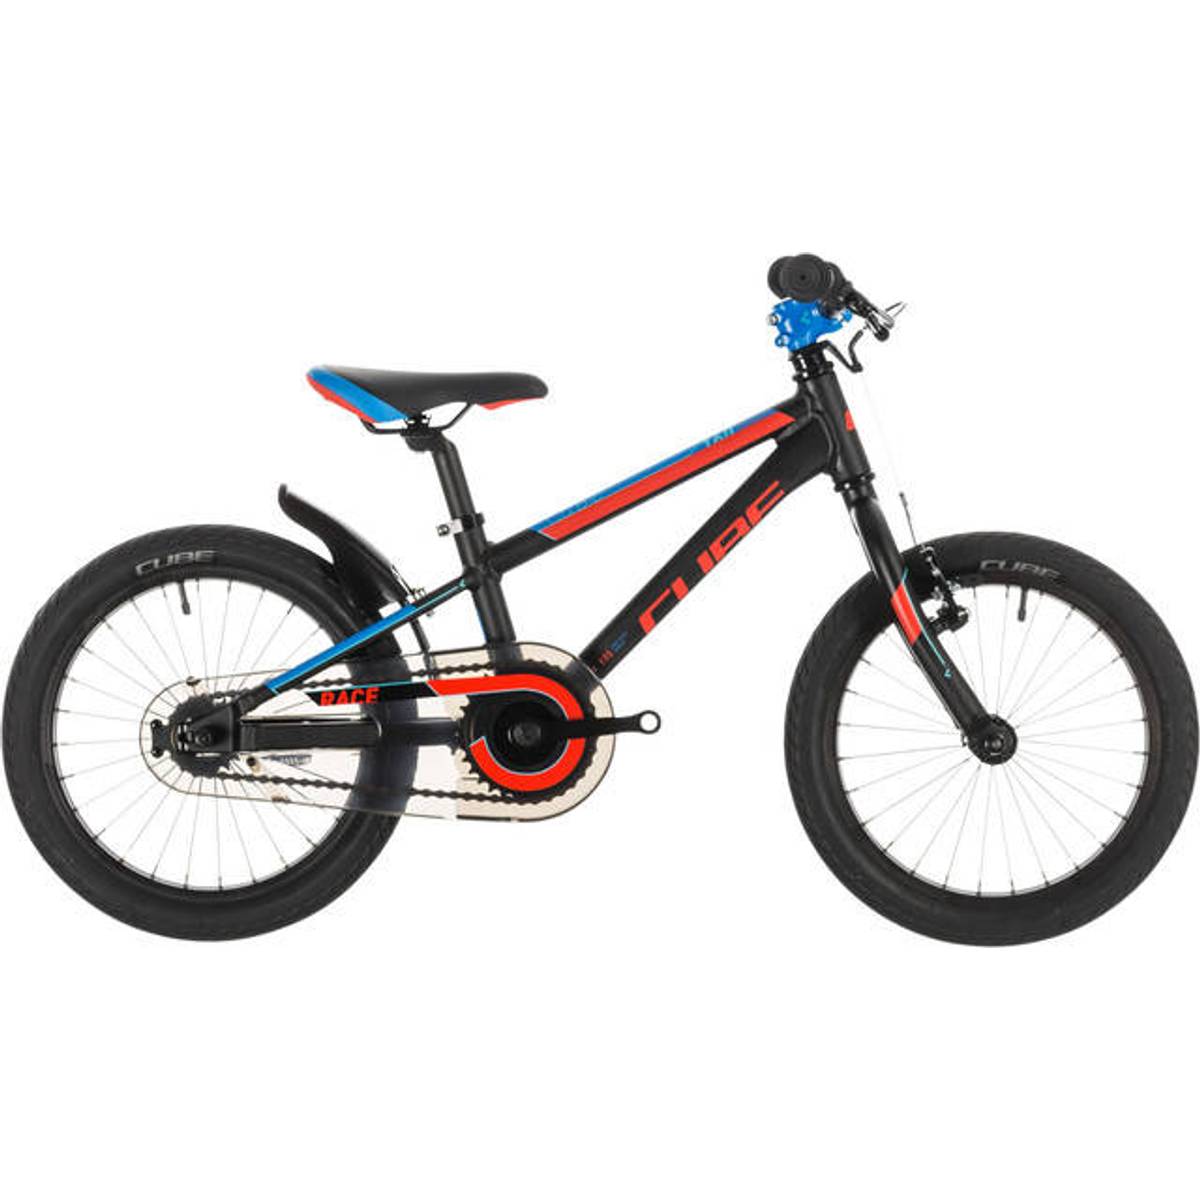 Cube cykler børn • Find den billigste pris hos PriceRunner nu »